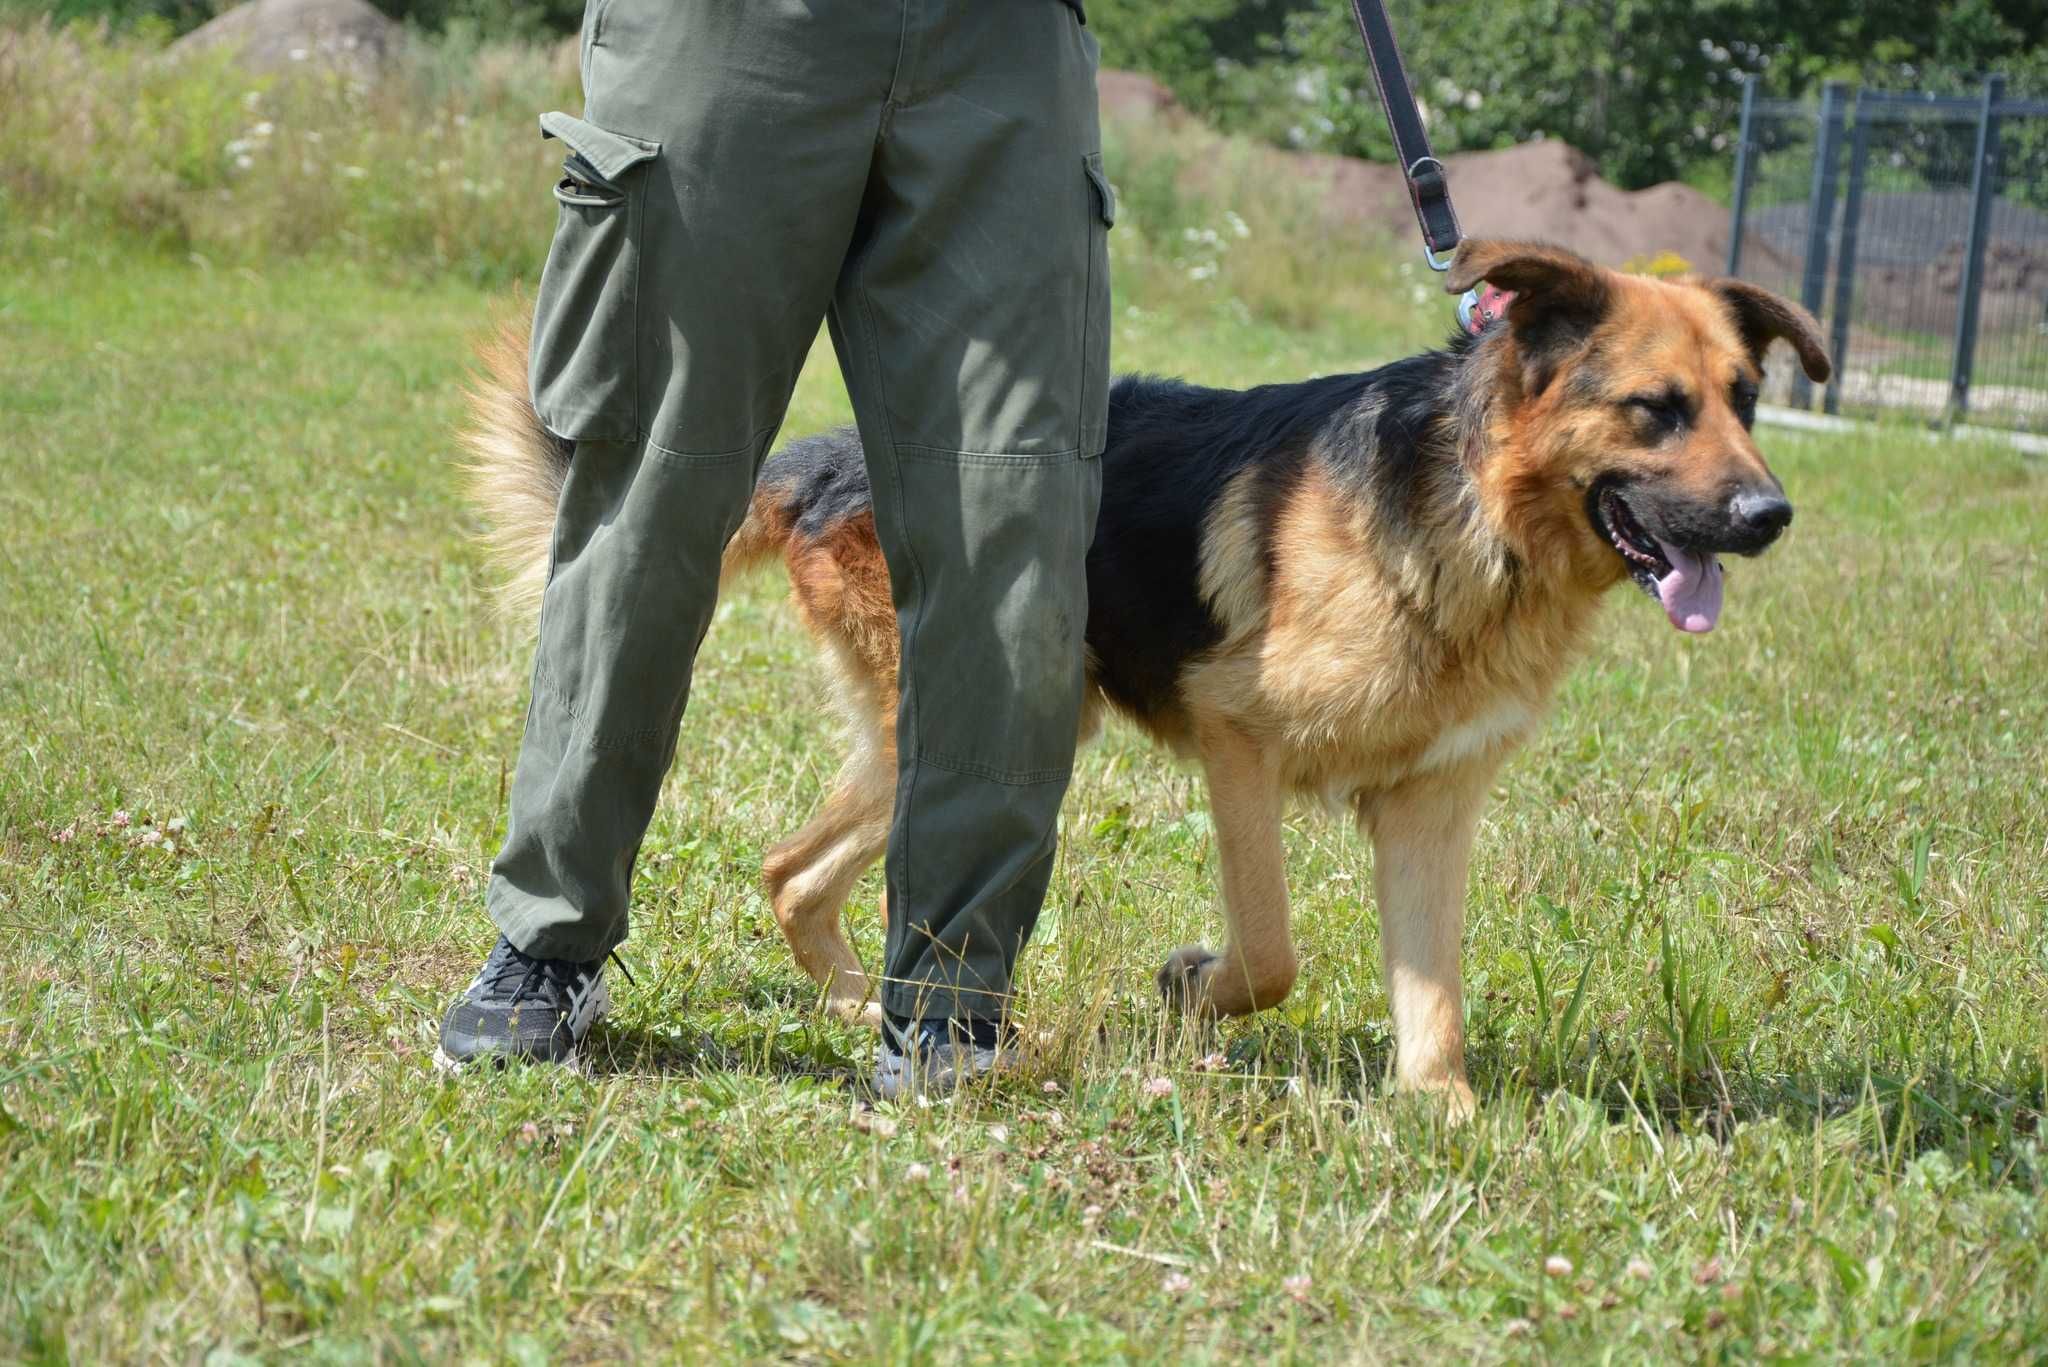 Remus - piękny pies w typie owczarka niemieckiego szuka domu